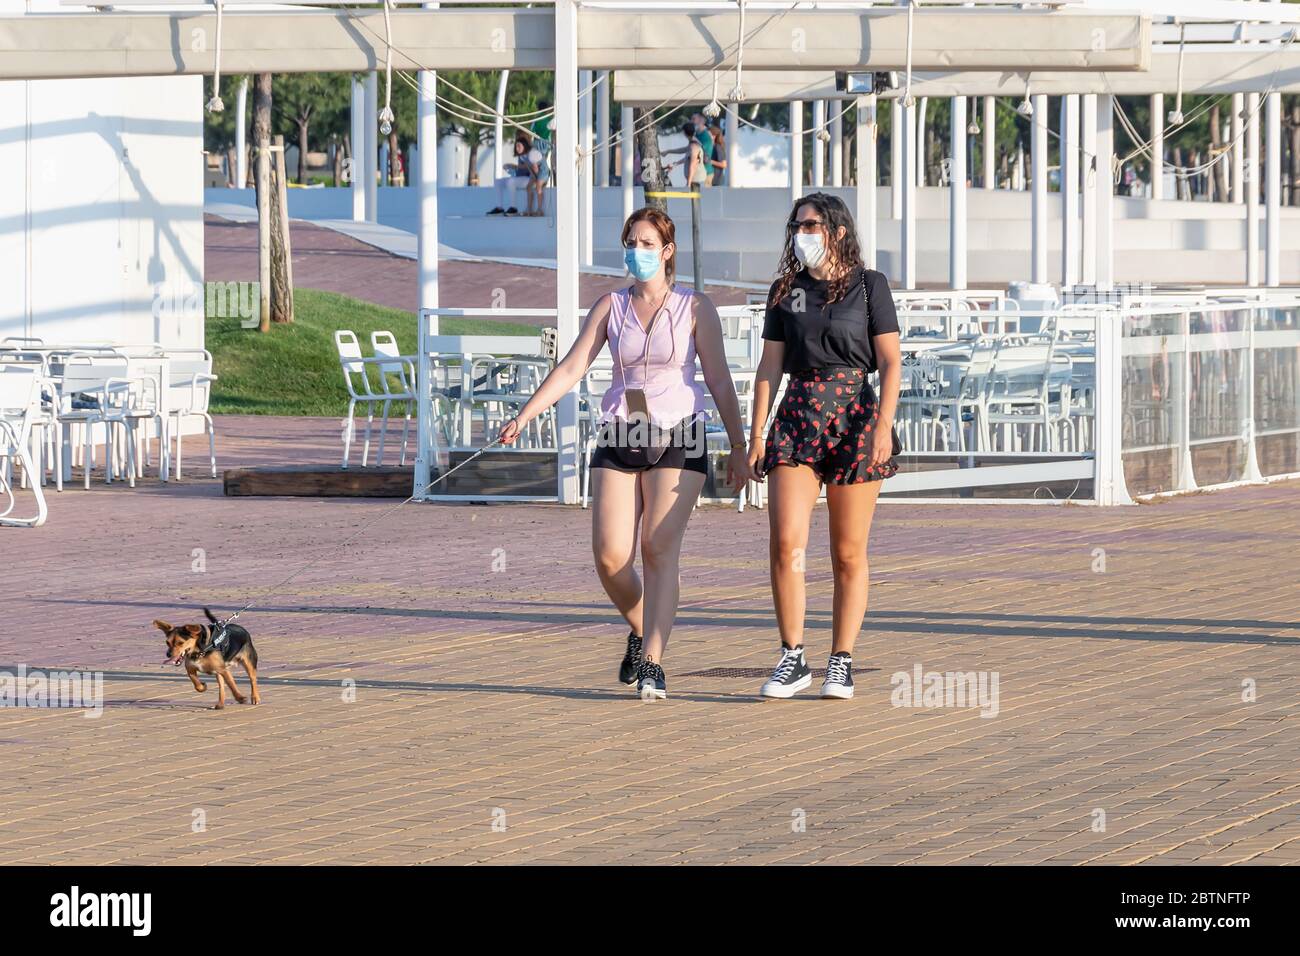 Huelva, Spanien - 23. Mai 2020: Frau, die ihren Hund bei Sonnenuntergang an der Huelva Promenade entlang geht, während des Alarmzustandes eine schützende oder medizinische Gesichtsmaske trägt Stockfoto